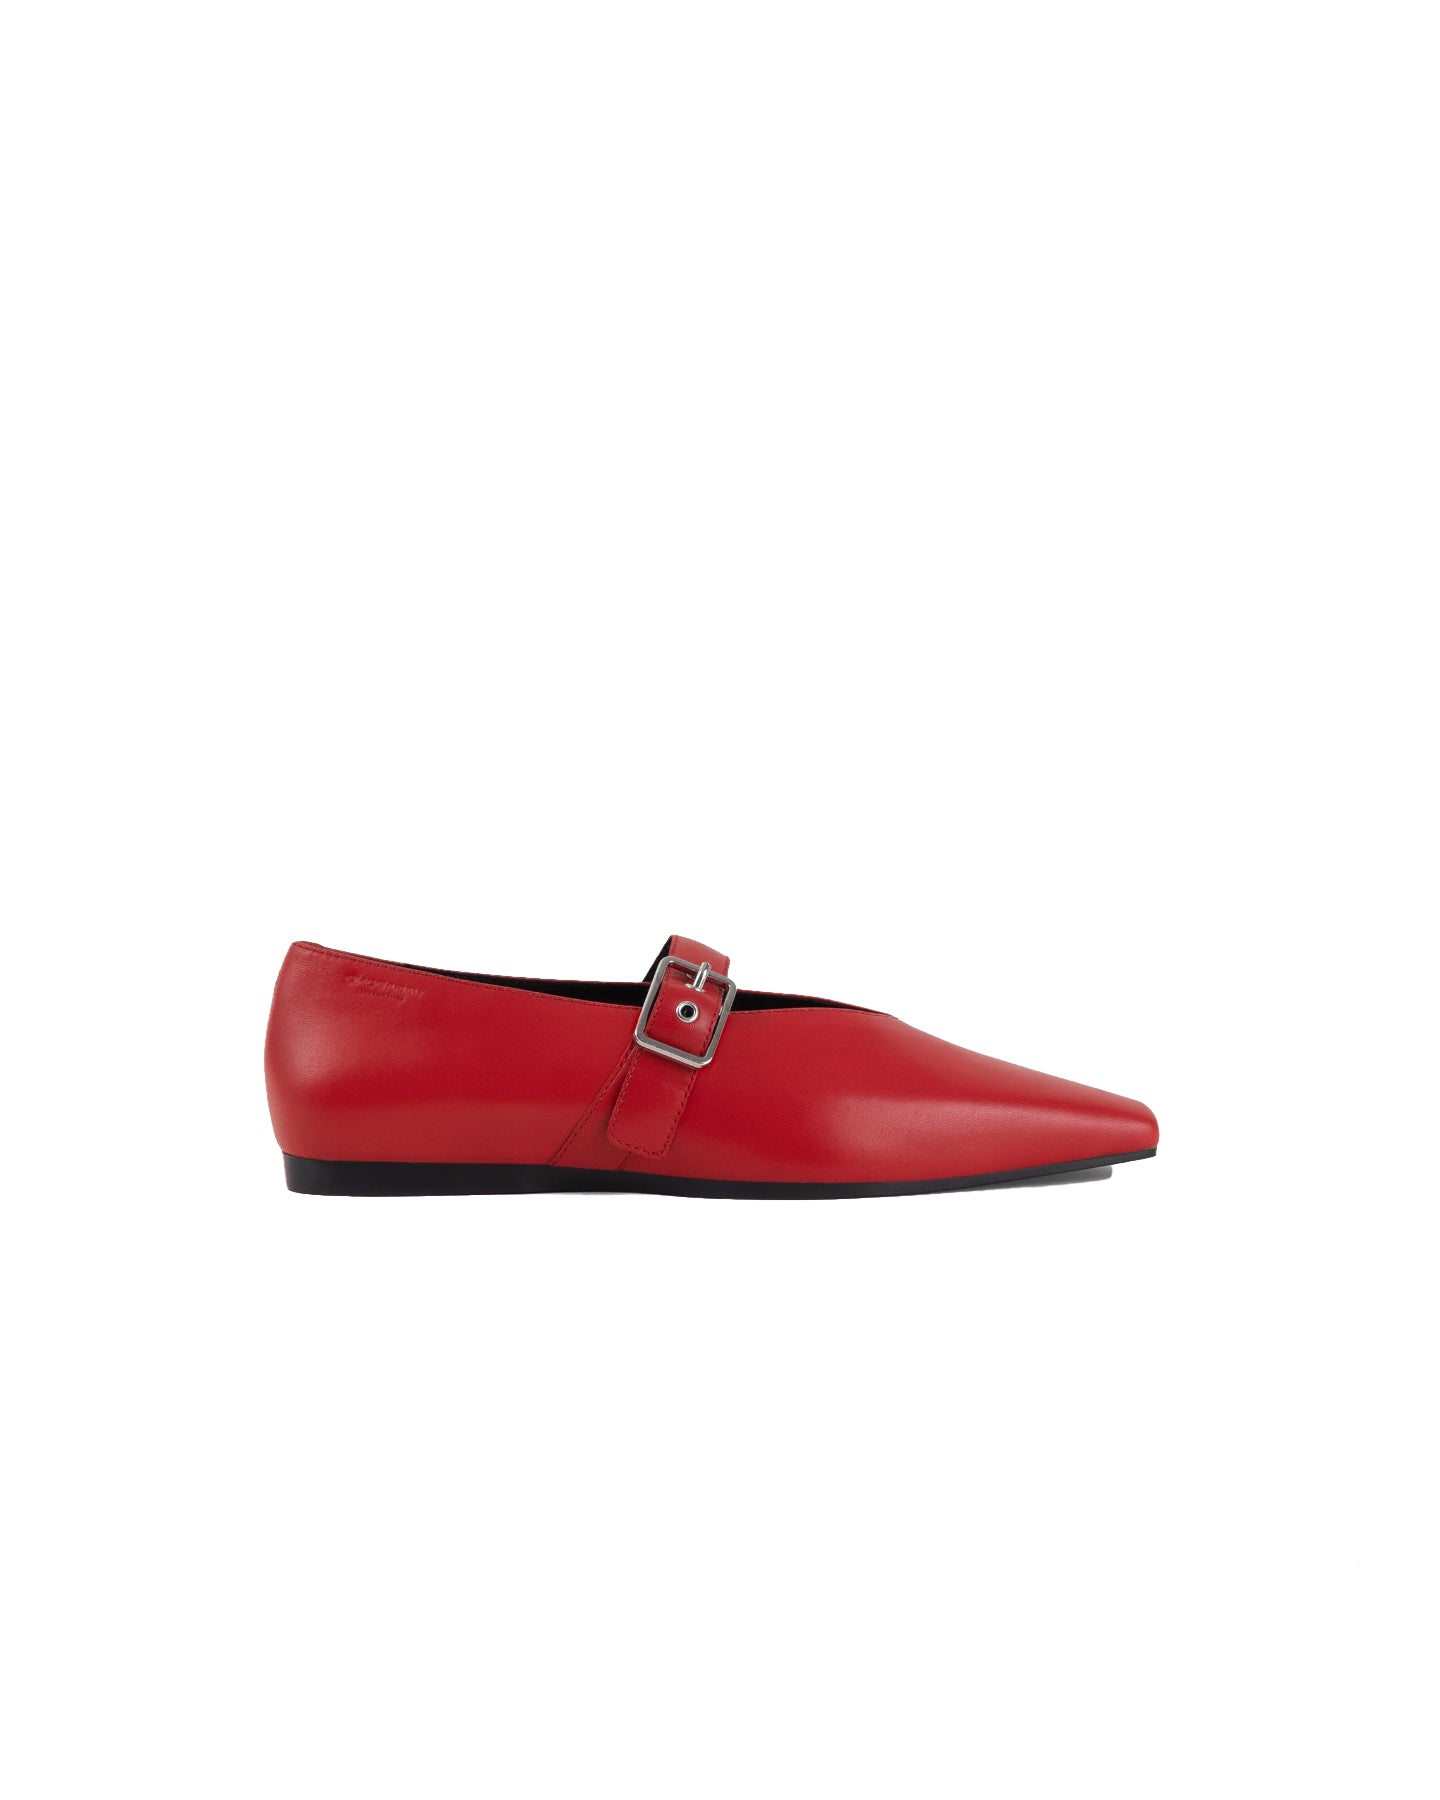 Zapatos Wioletta (5701-201-48) - Rojo